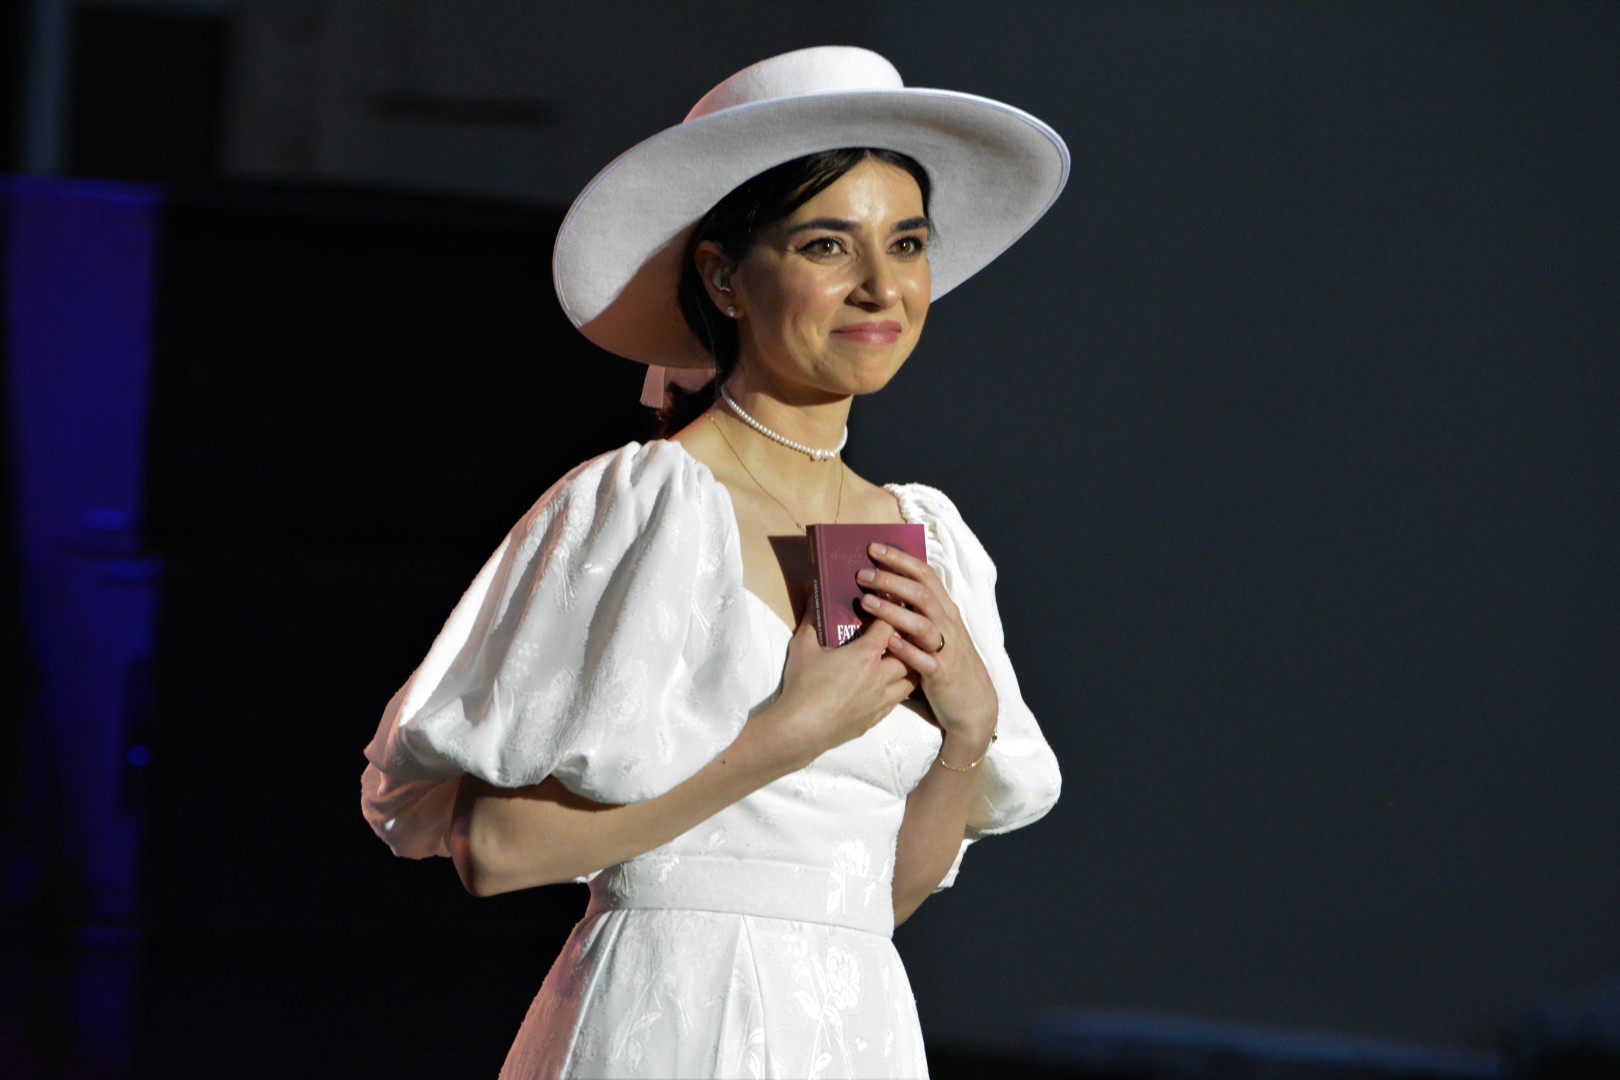 Alexandra Ușurelu at Teatrul de Vară „Mihai Eminescu” in Bucharest on June 14, 2021 (32f530fde6)